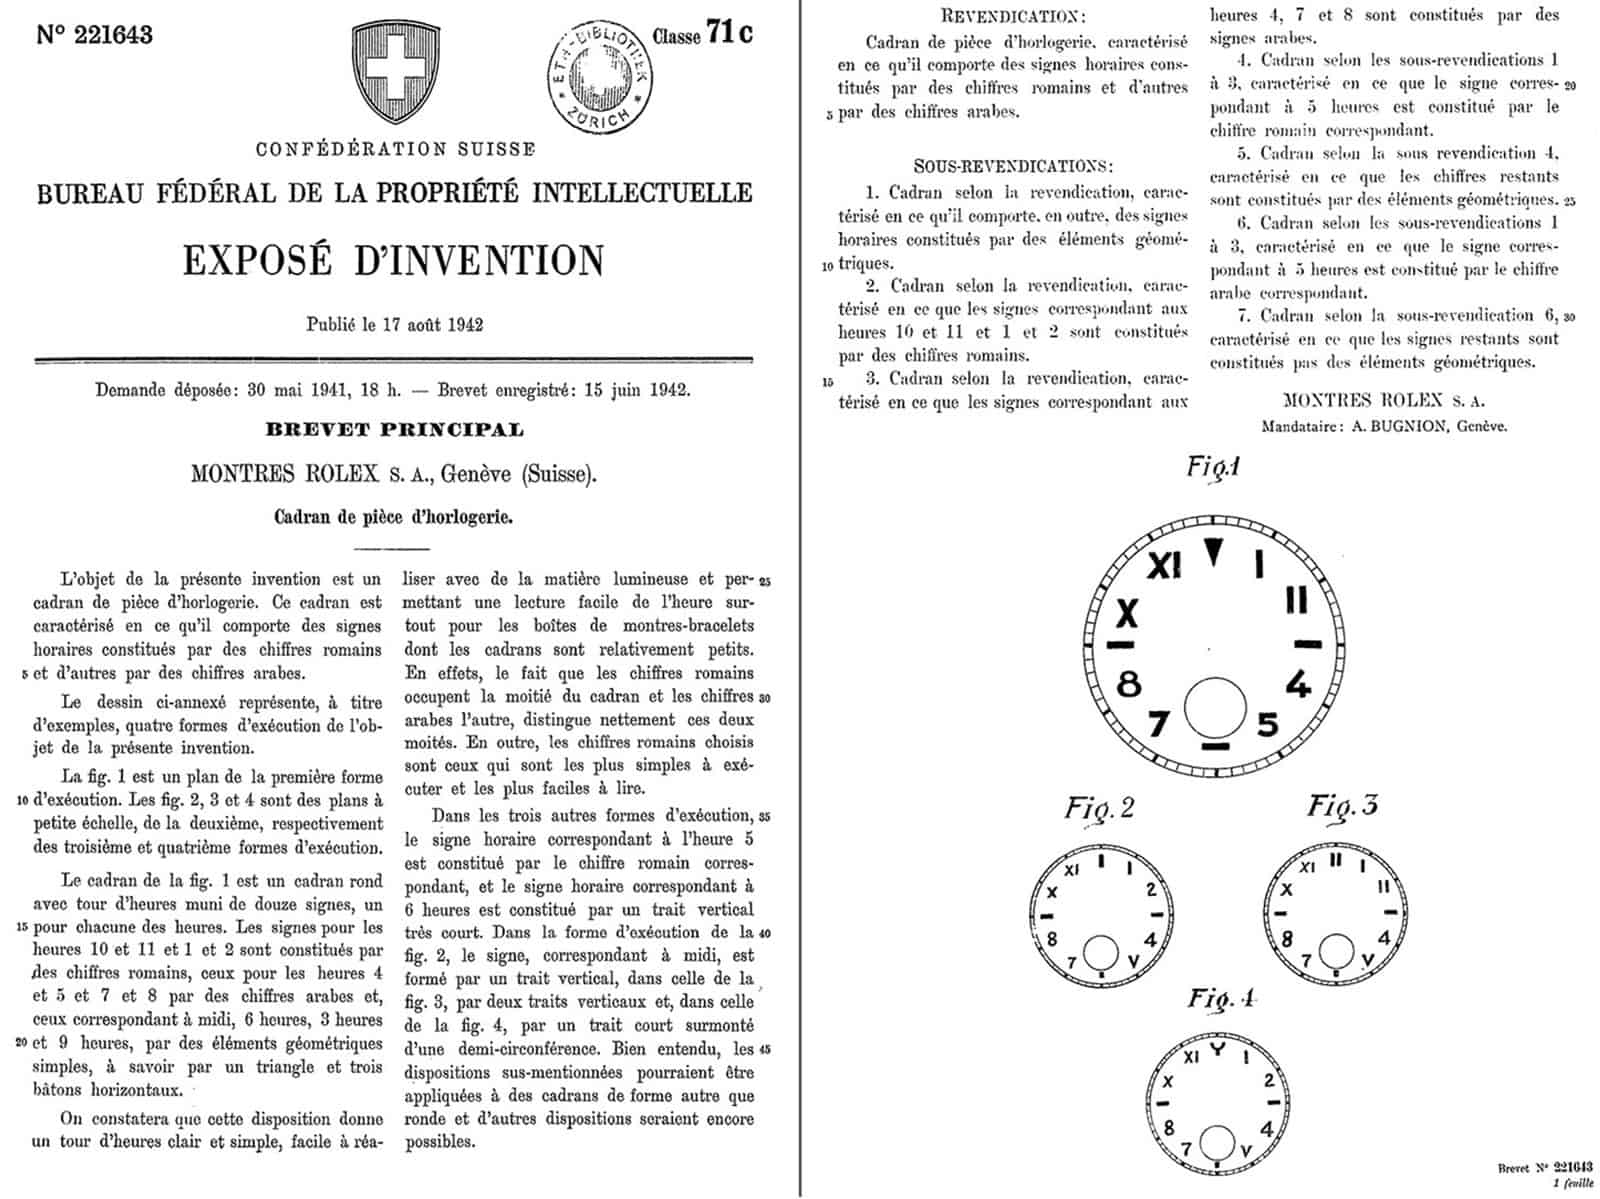 Rolex Patent 1942 des lese-sicheren Leuchtblatts heute salopp California Dial genannt